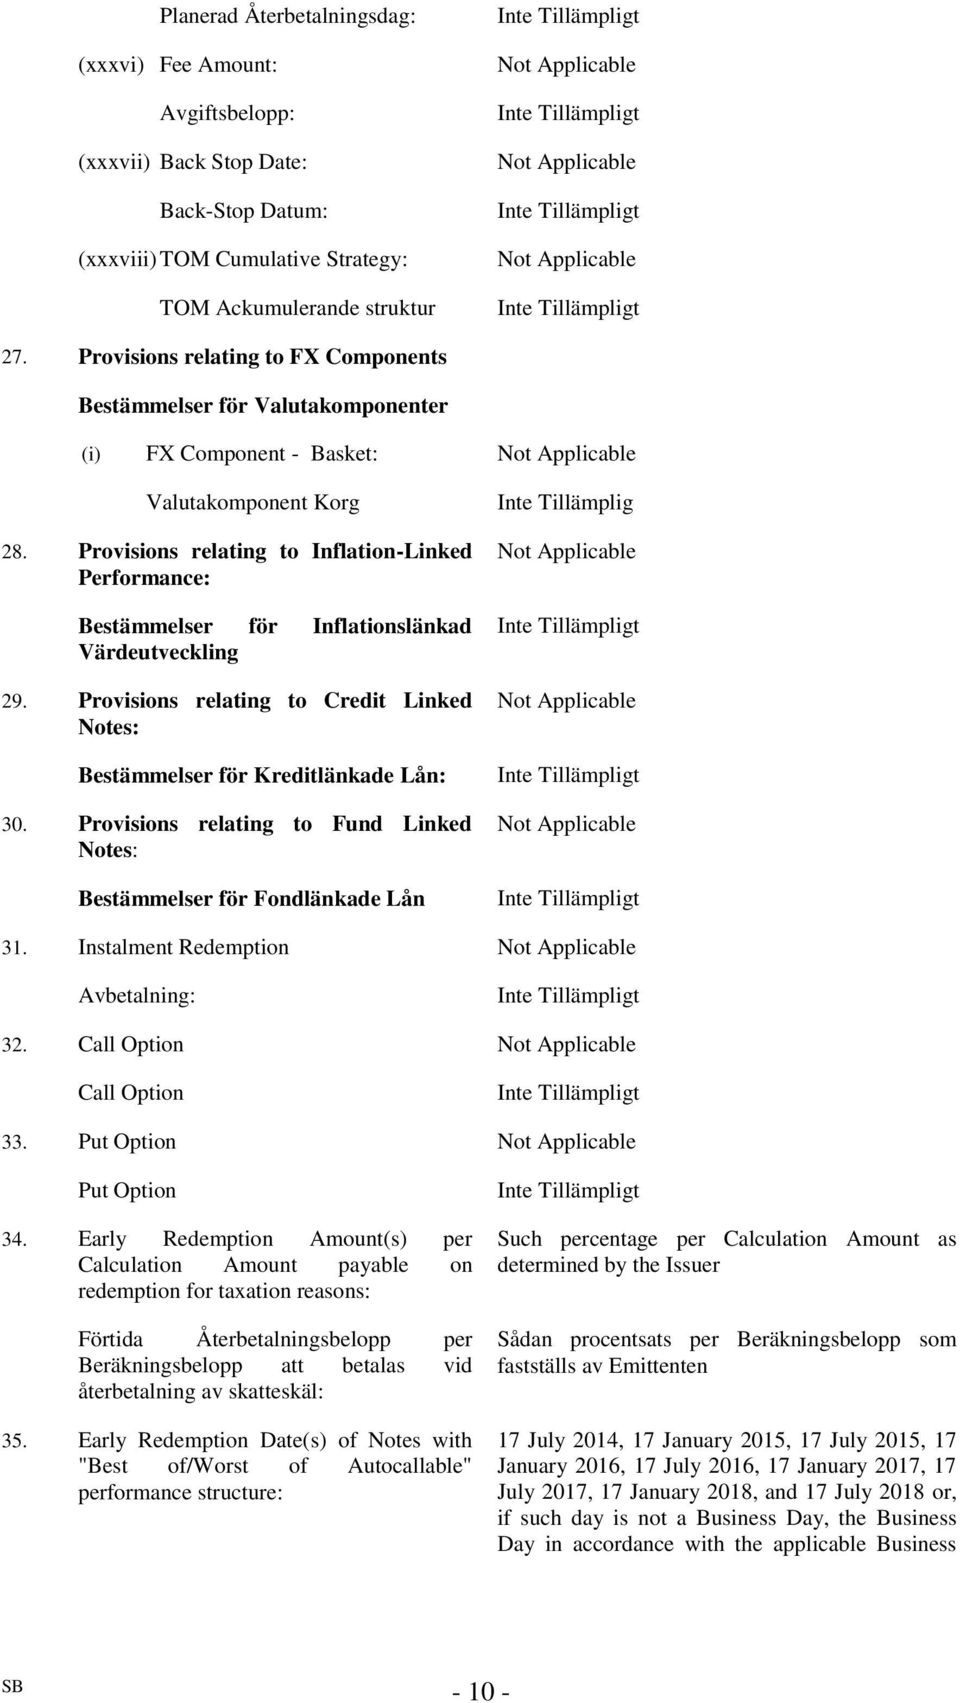 Provisions relating to Inflation-Linked Performance: Bestämmelser för Inflationslänkad Värdeutveckling 29. Provisions relating to Credit Linked Notes: Bestämmelser för Kreditlänkade Lån: 30.